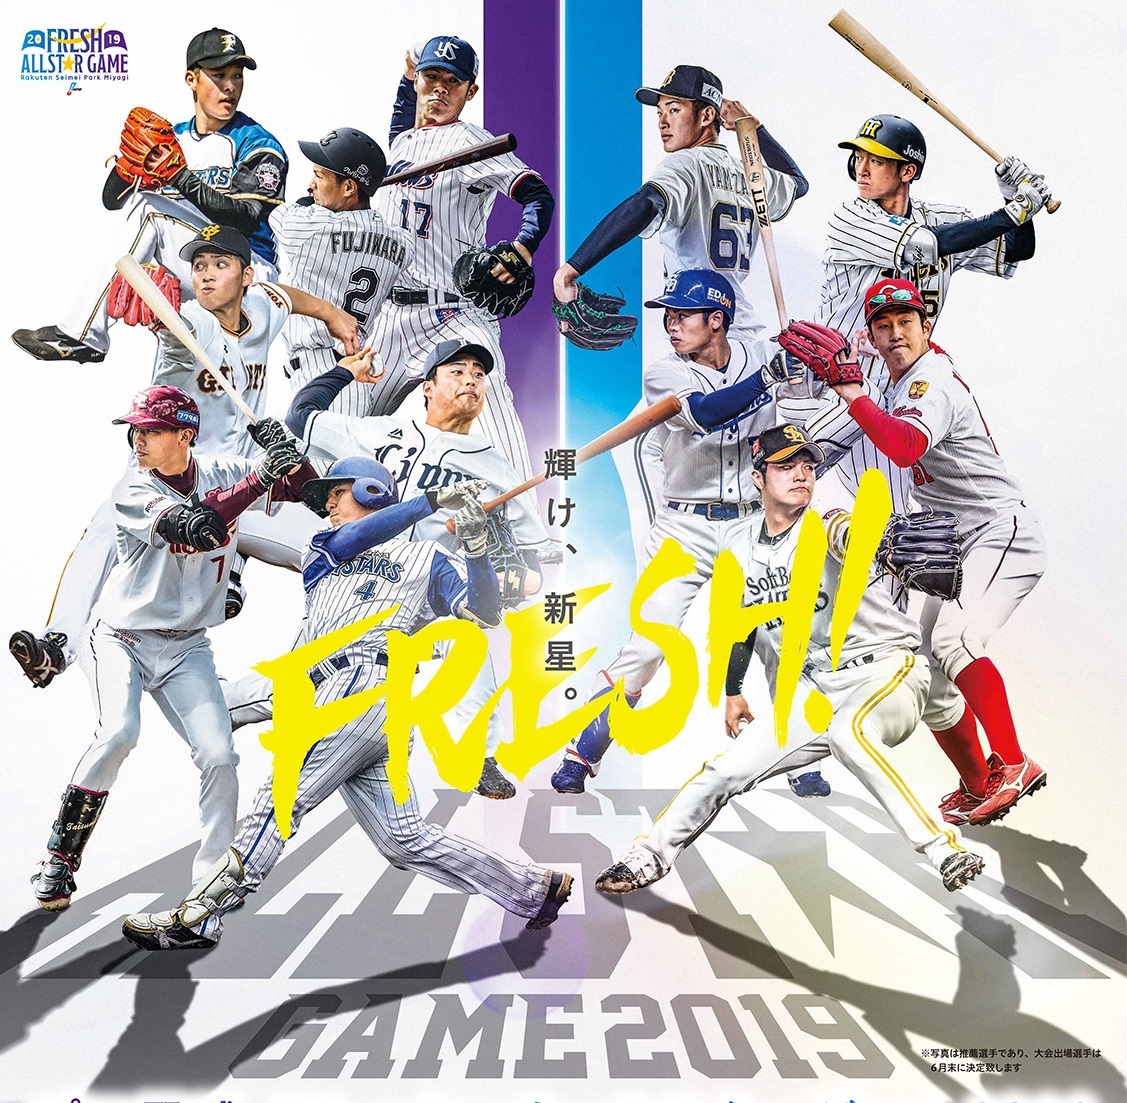 『プロ野球フレッシュオールスターゲーム2019』の出場予定選手が発表された